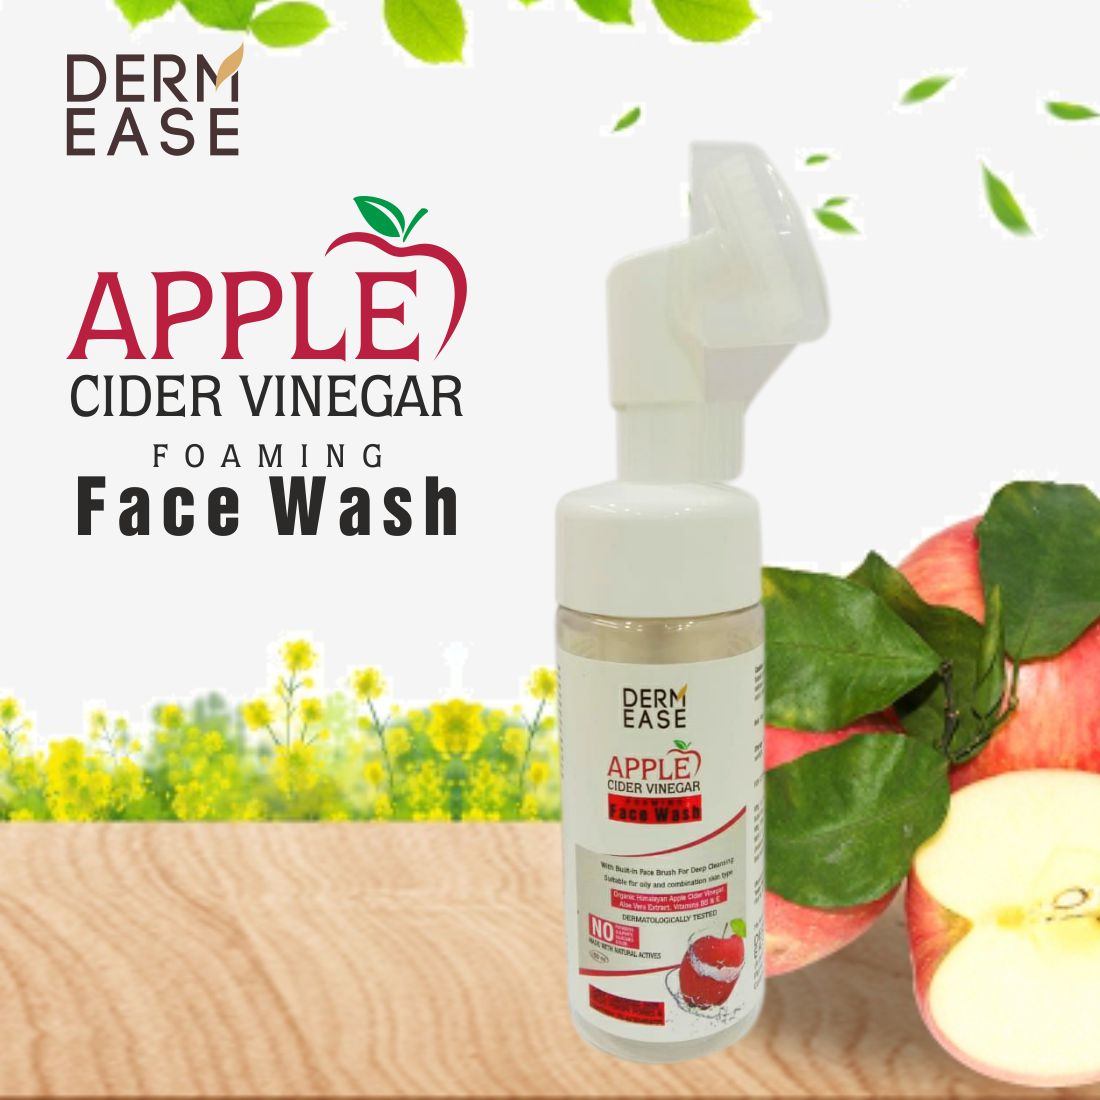 DERM EASE Apple Cider Vinegar Foaming Face Wash